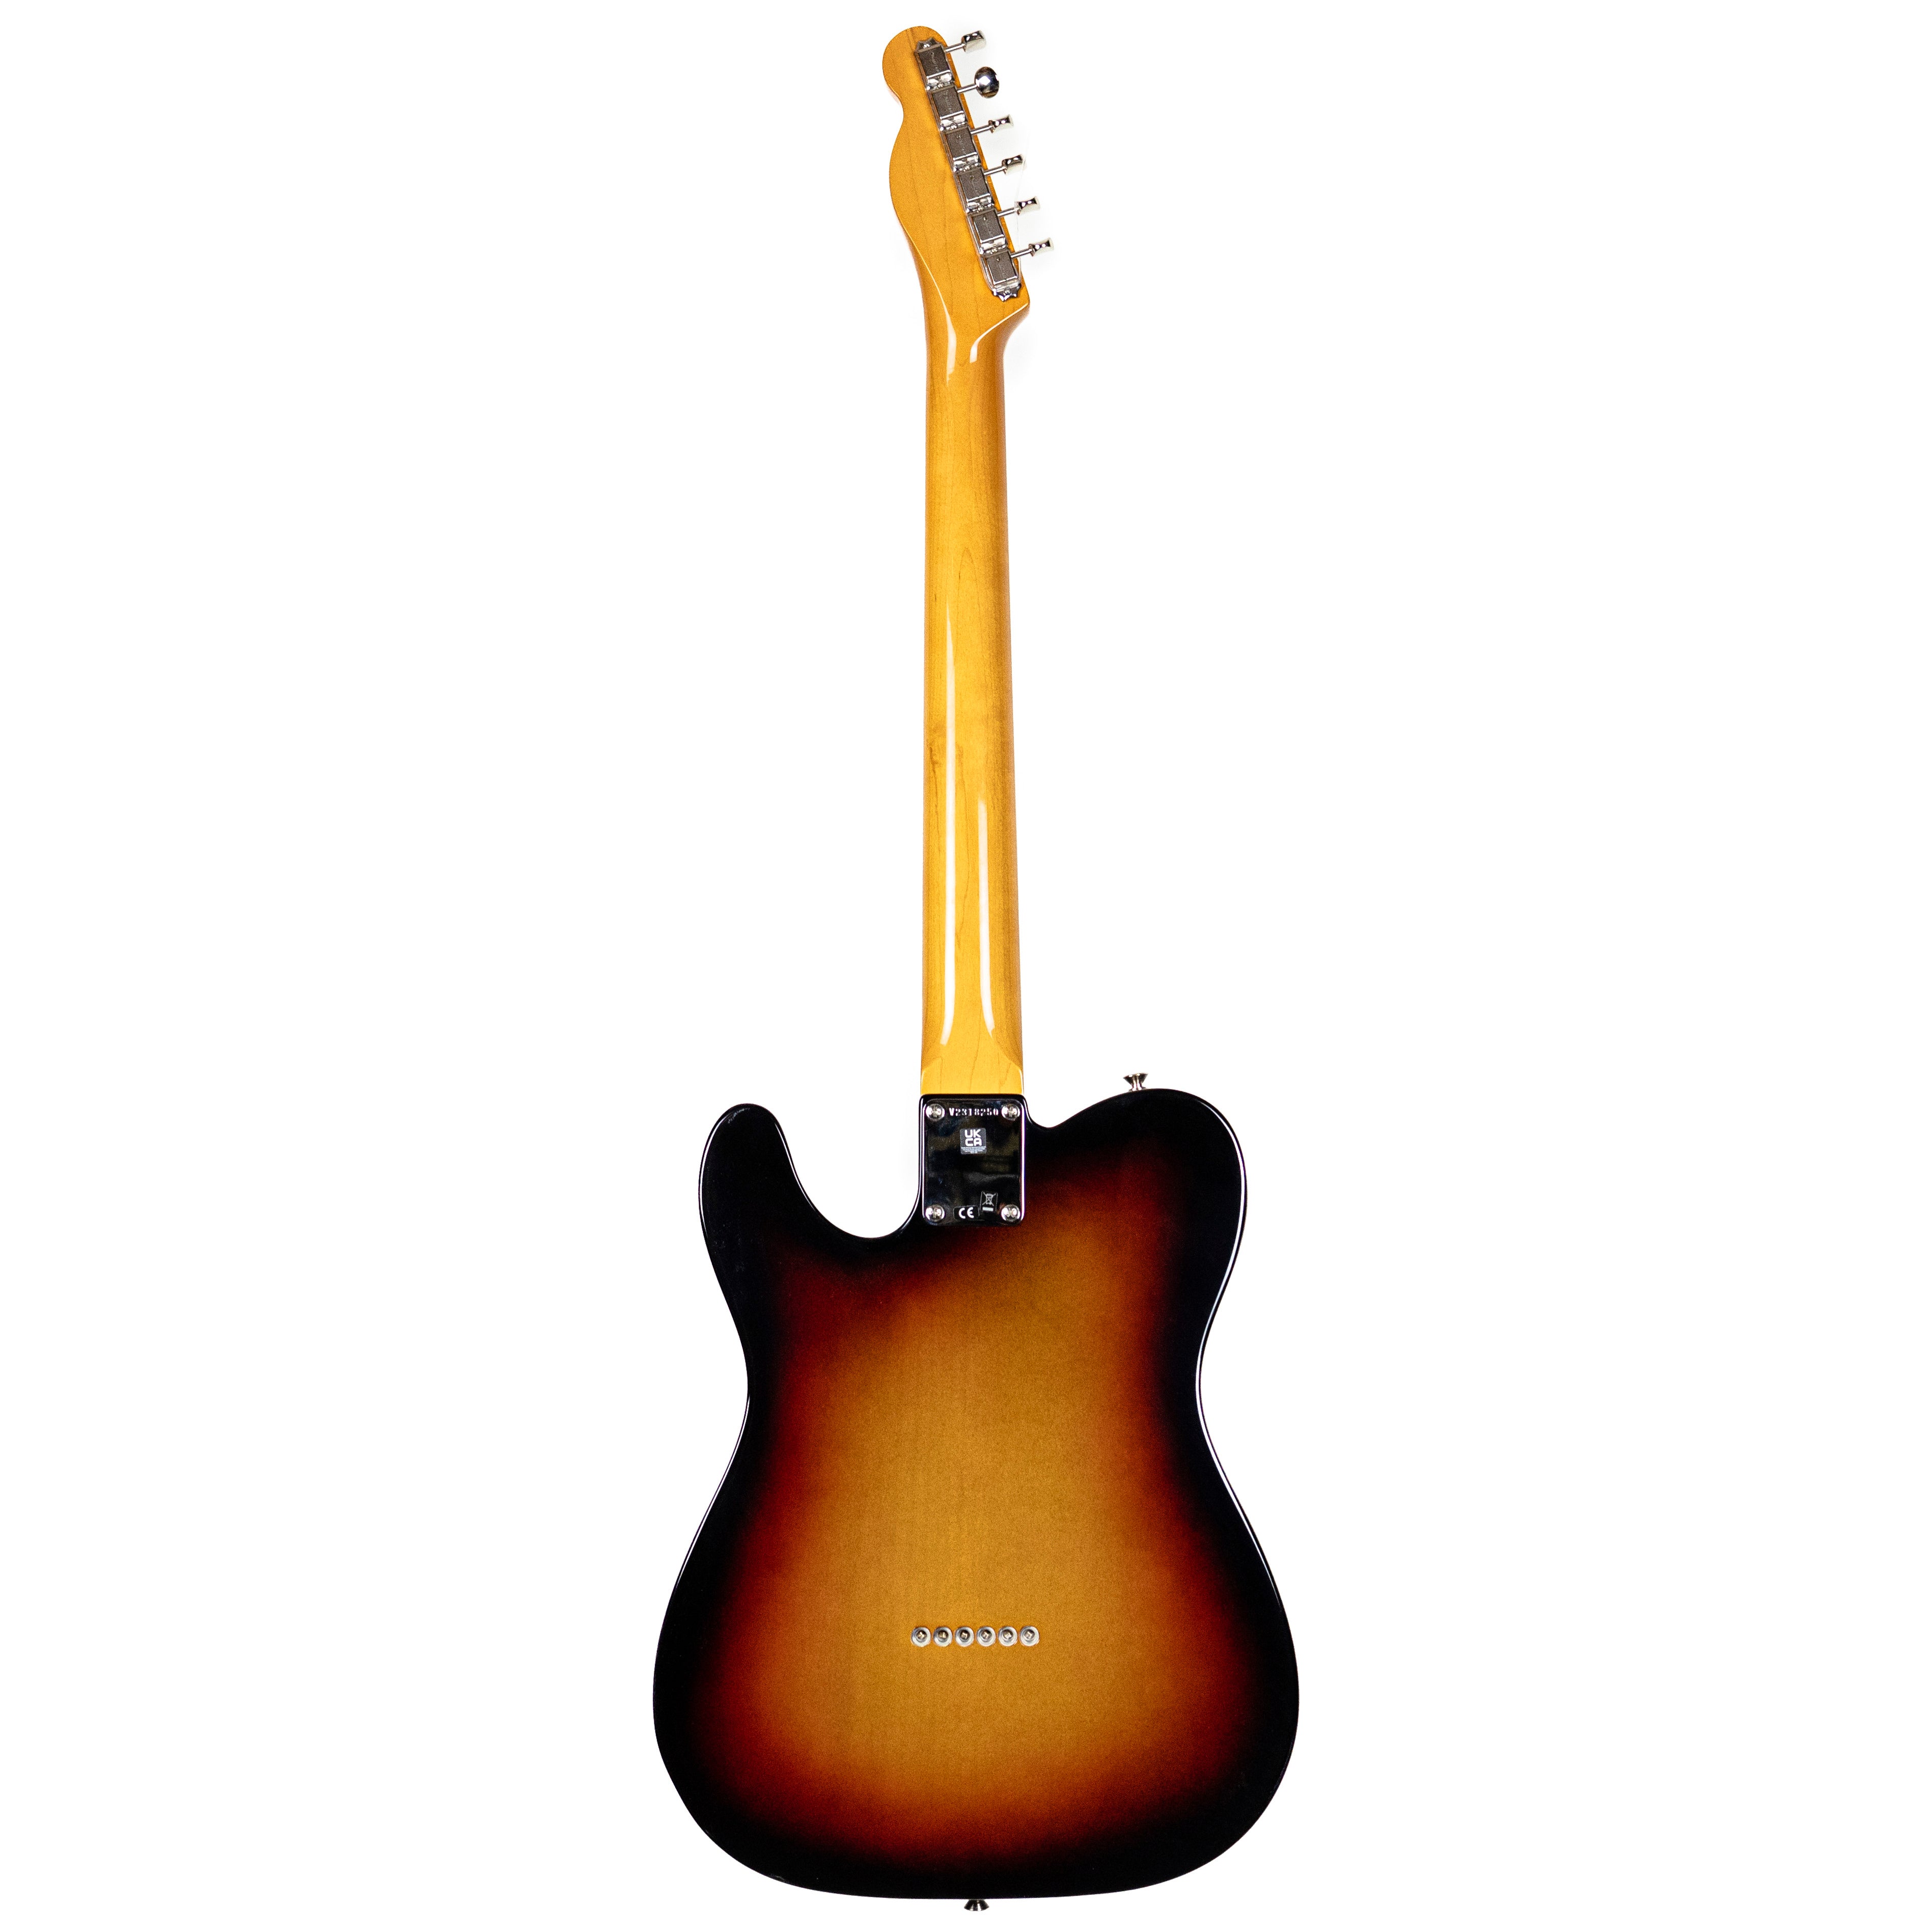 Fender American Vintage II 1963 Tele Sunburst